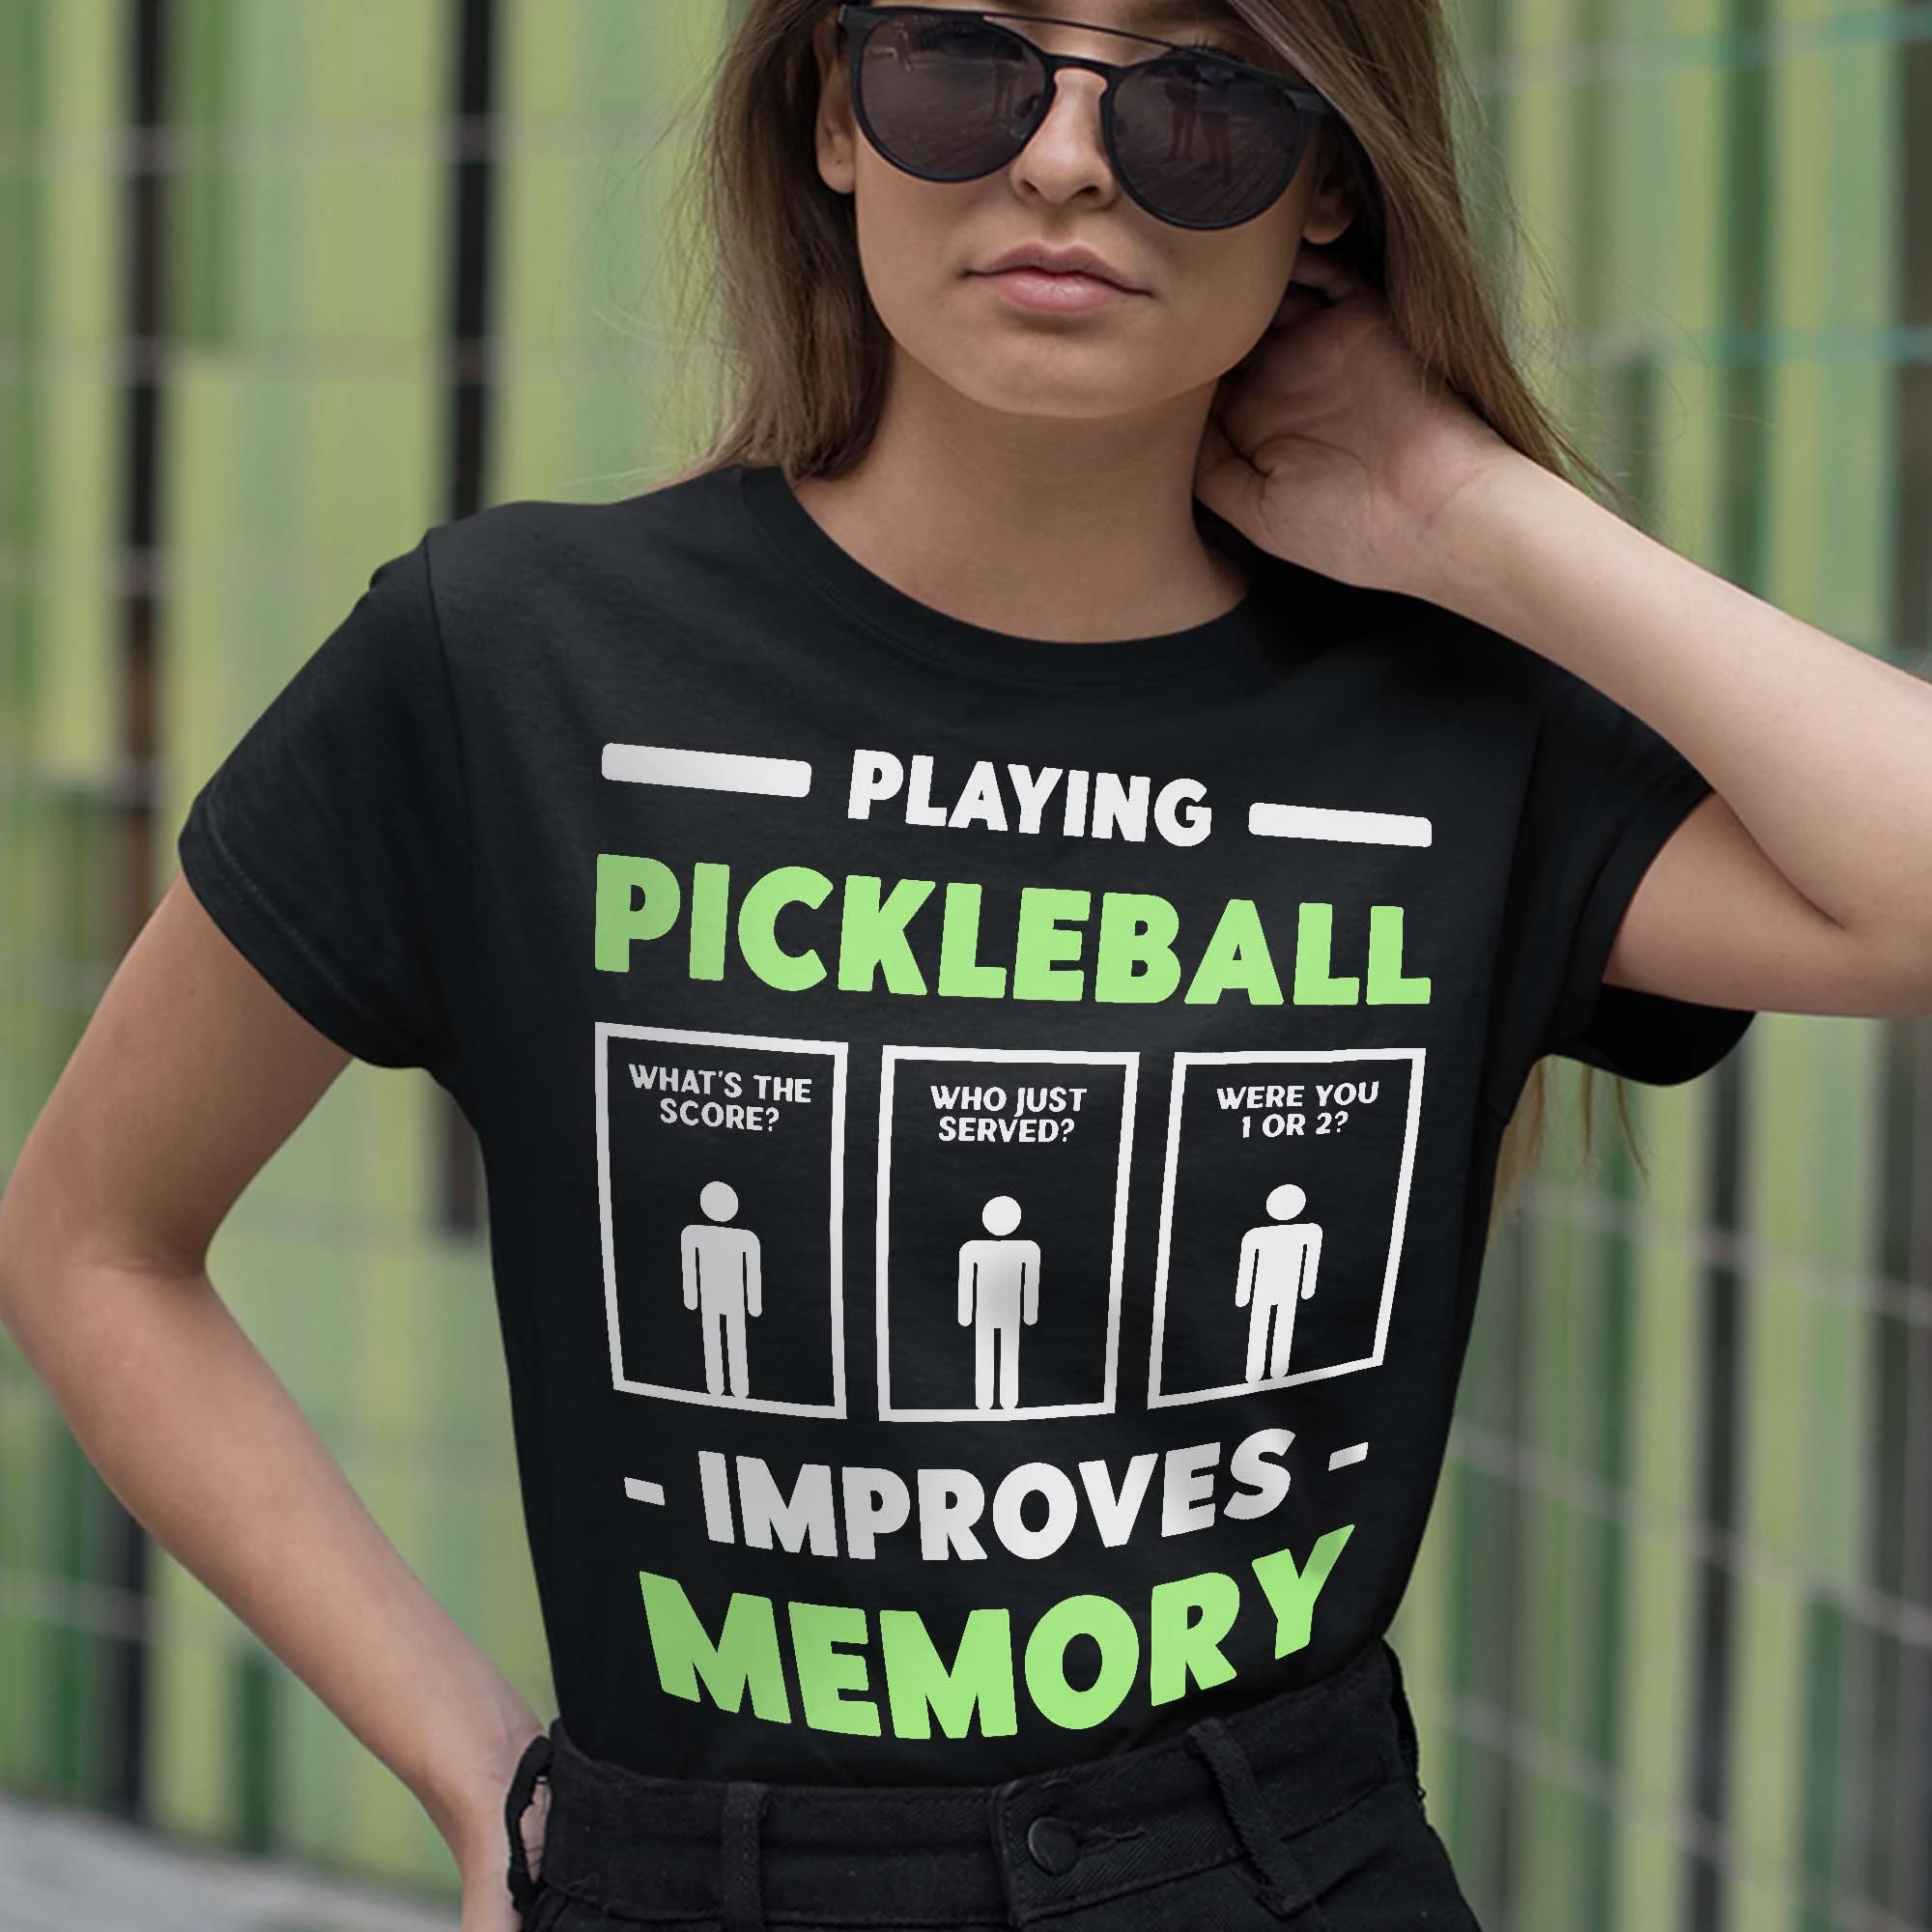 Women’s Shirts for pickleball